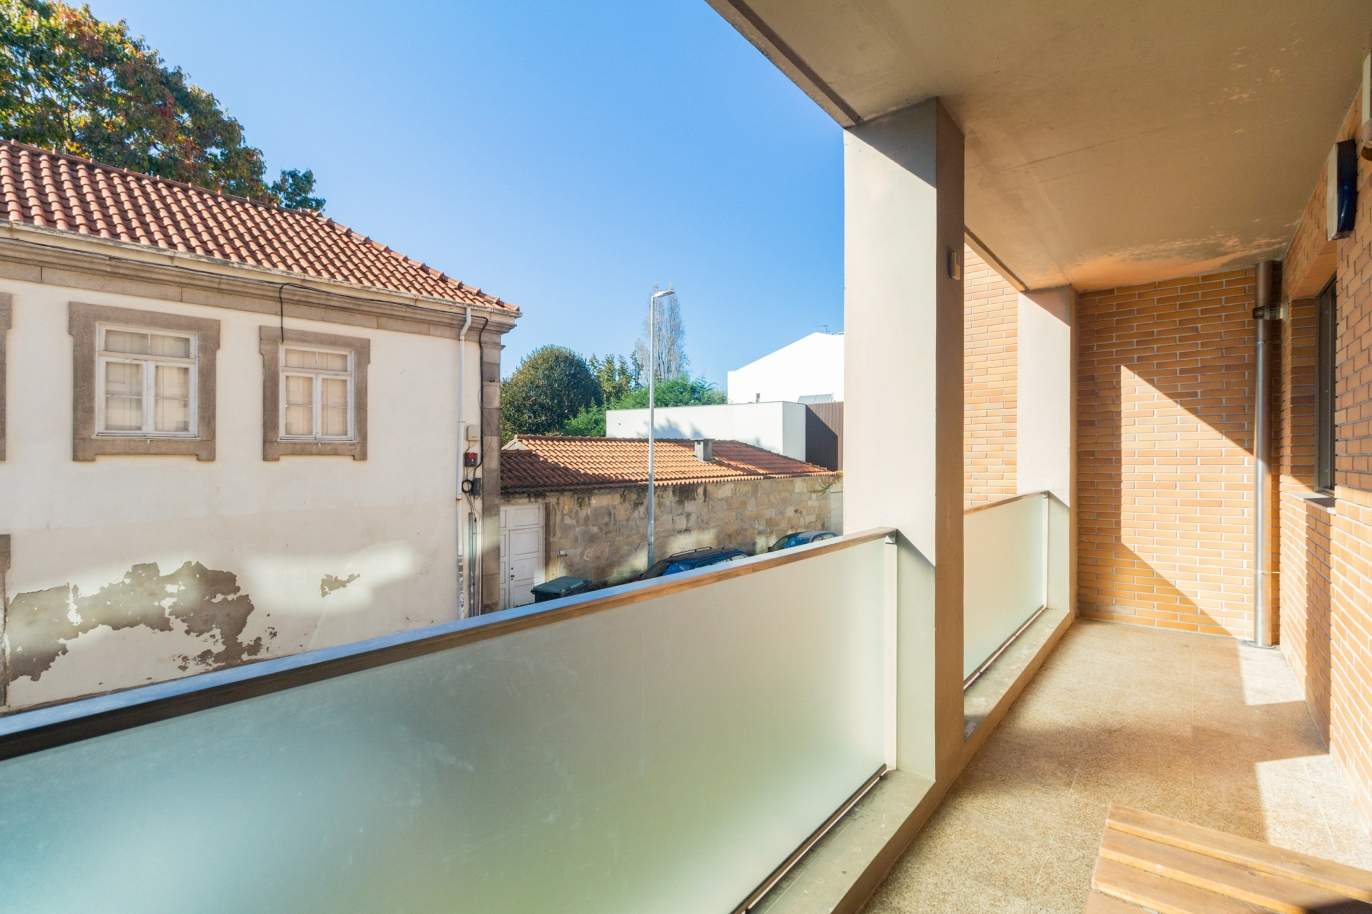 Apartamento com varanda, para venda, em Ramalde, Porto_184346